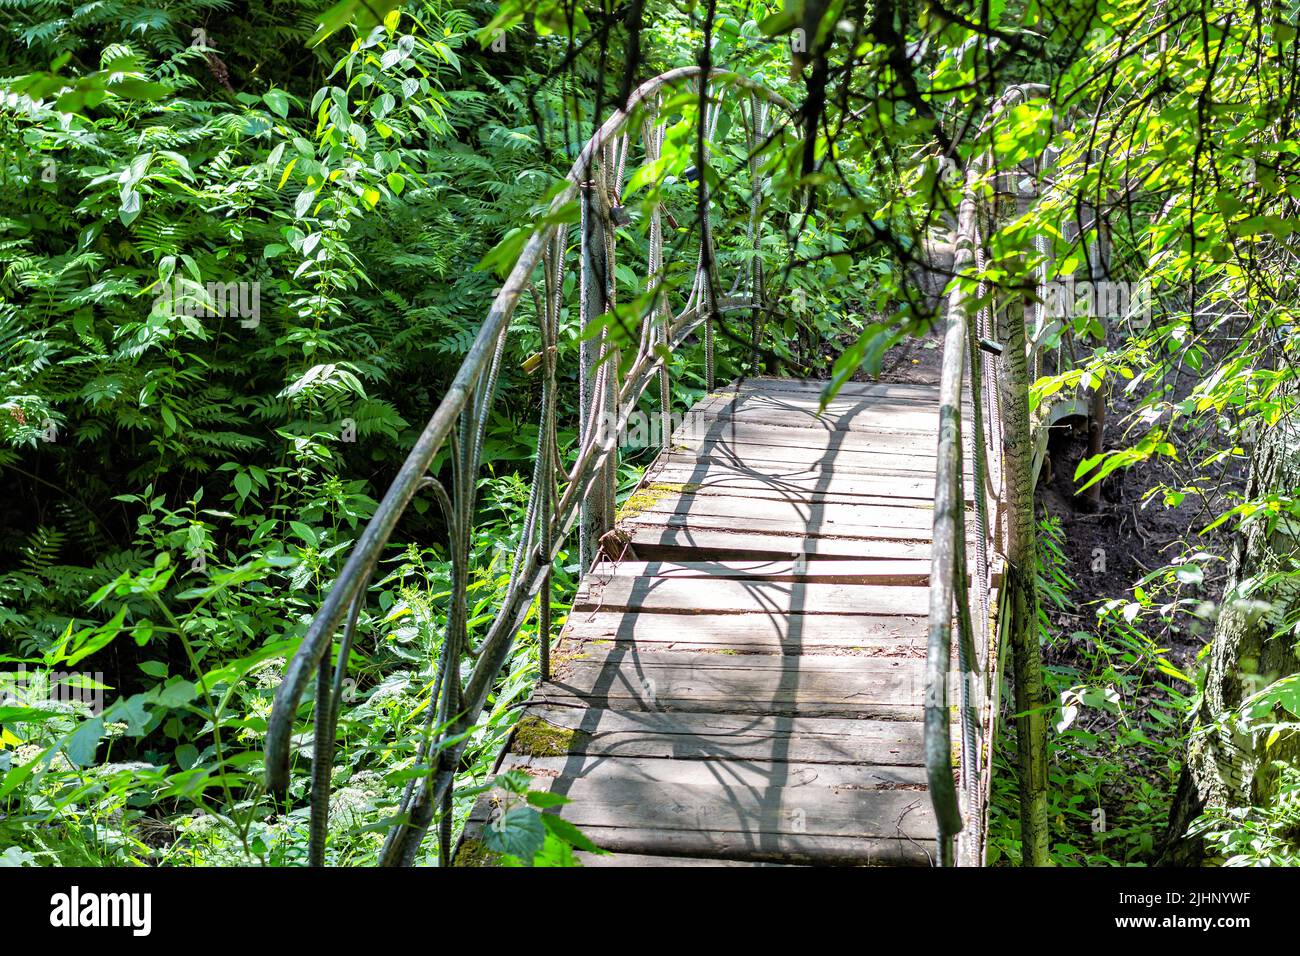 Una foresta abbandonata in crescita, un fiume prosciugato, ponte di legno antico e tavole marciume parlano di desolation.bridge con supporti in metallo openwork. Foto Stock